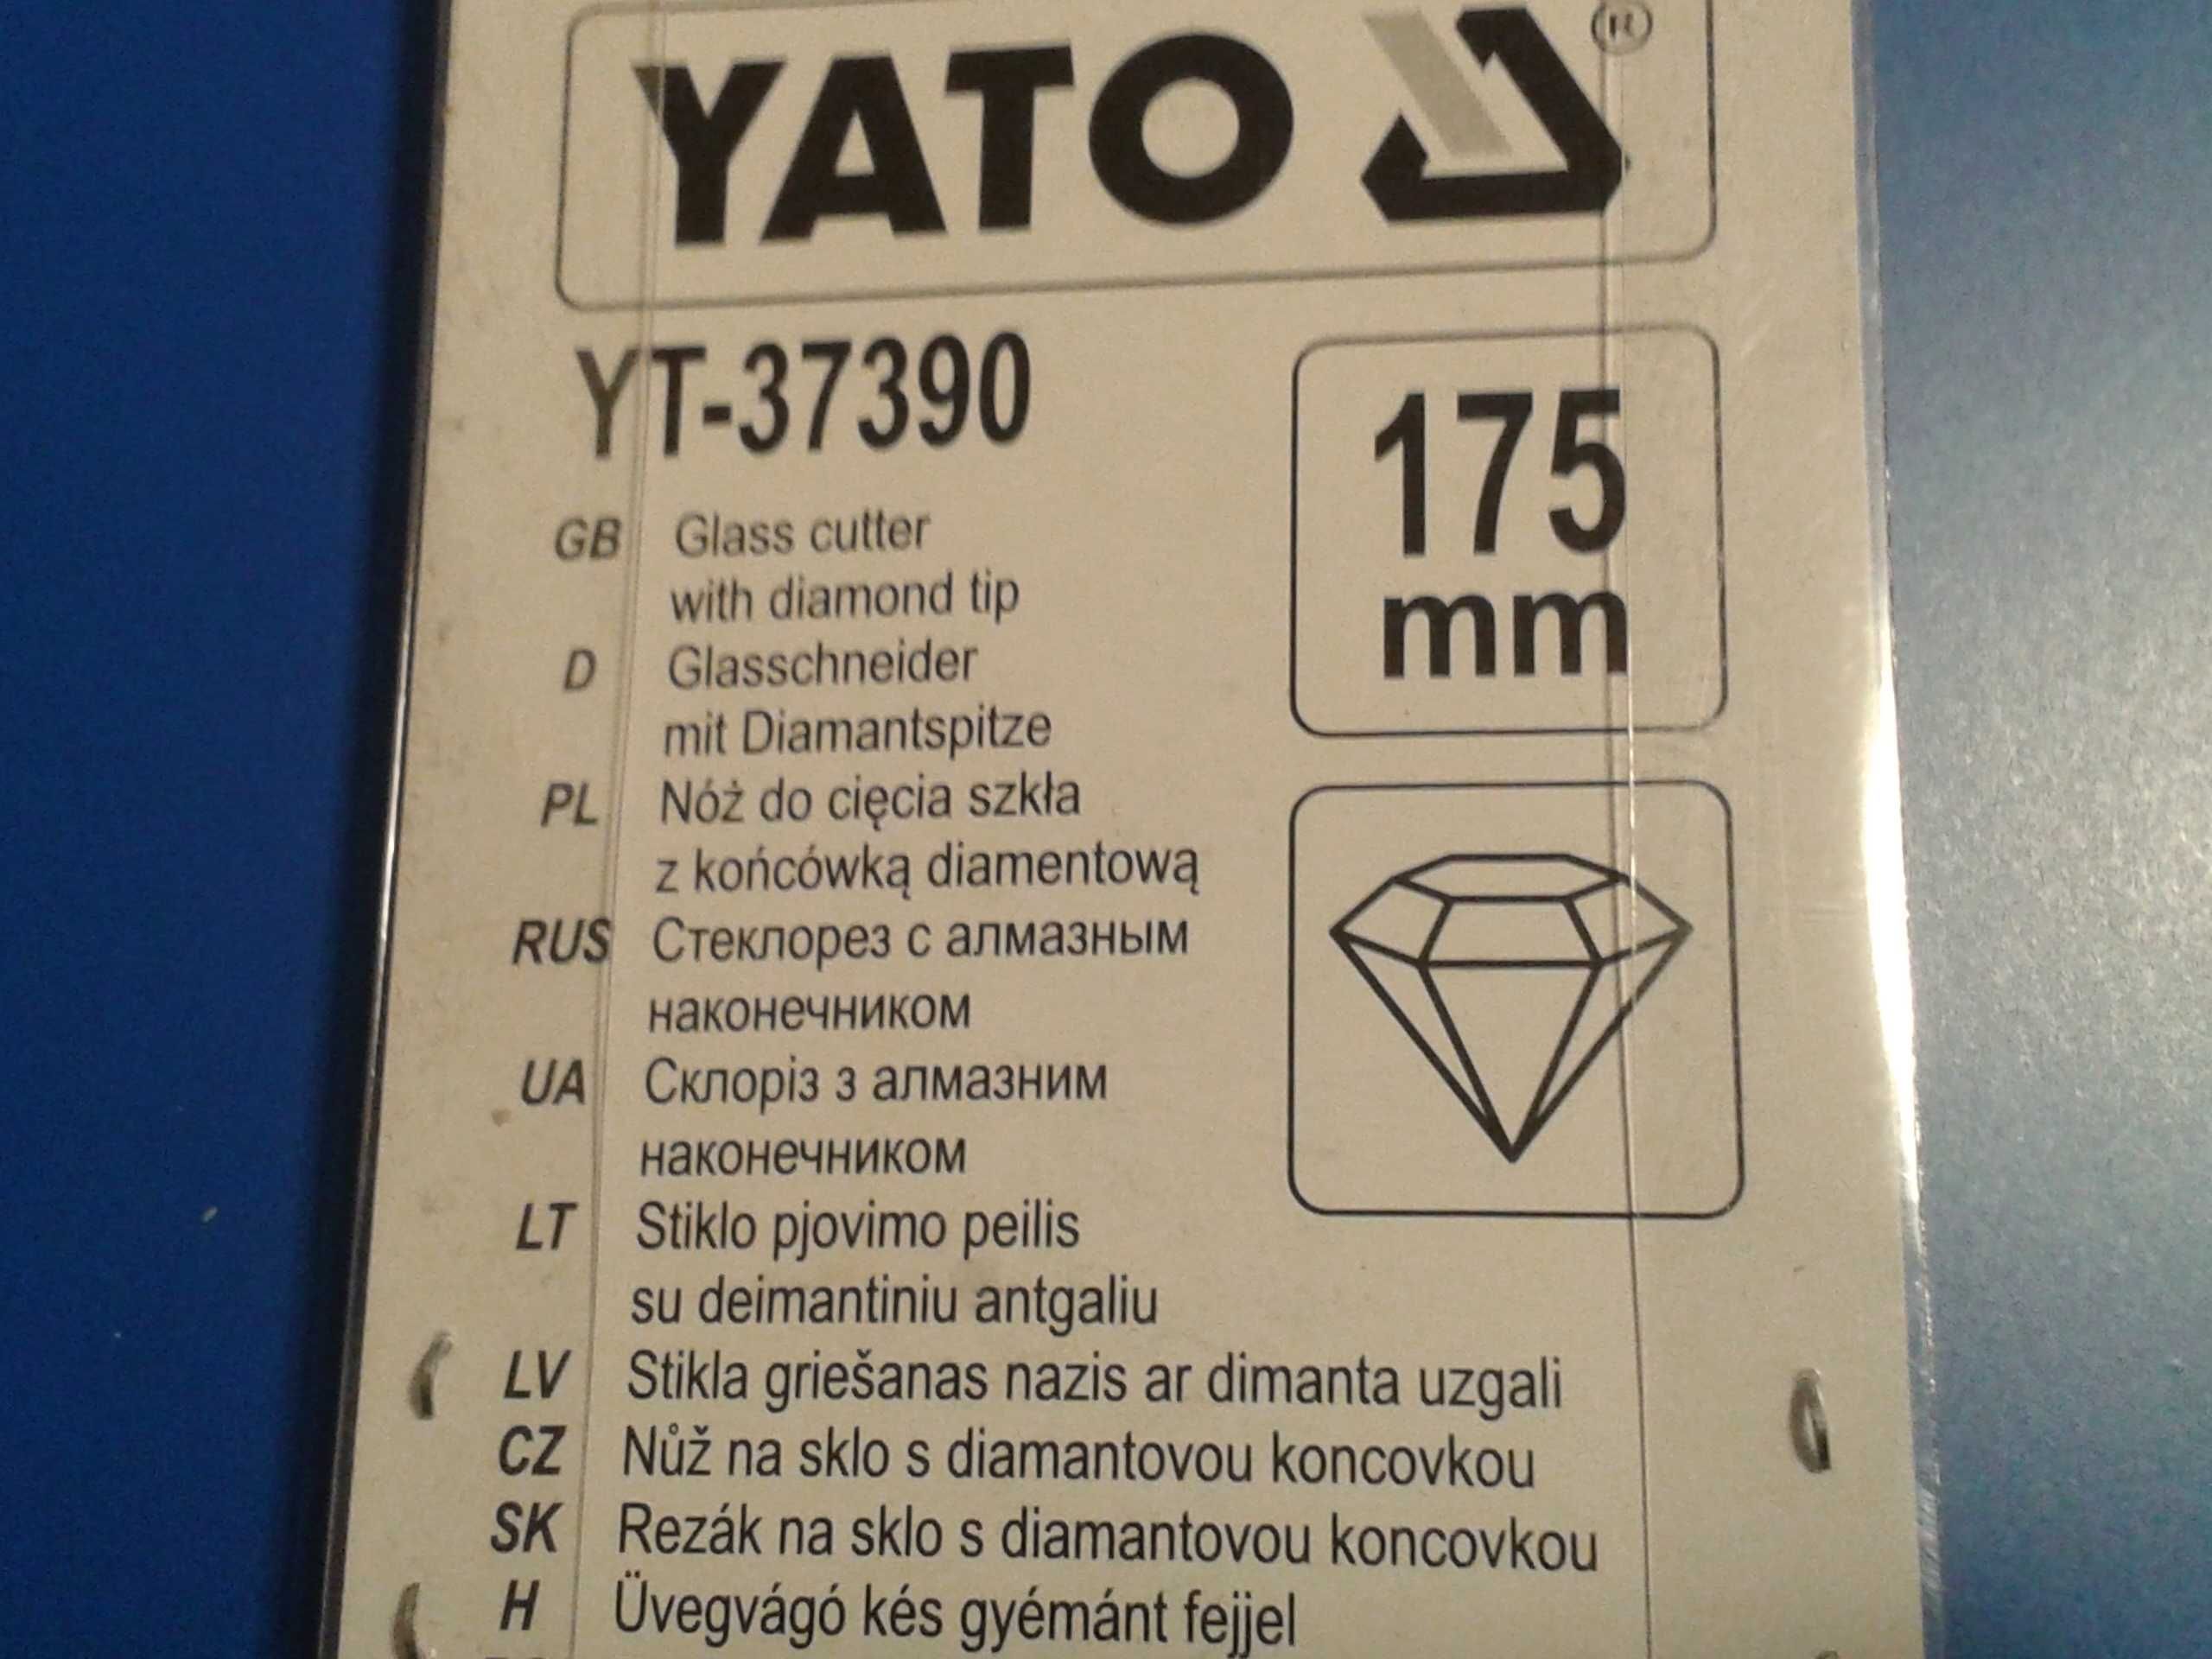 Nóż diamentowy do cięcia szkła YATO